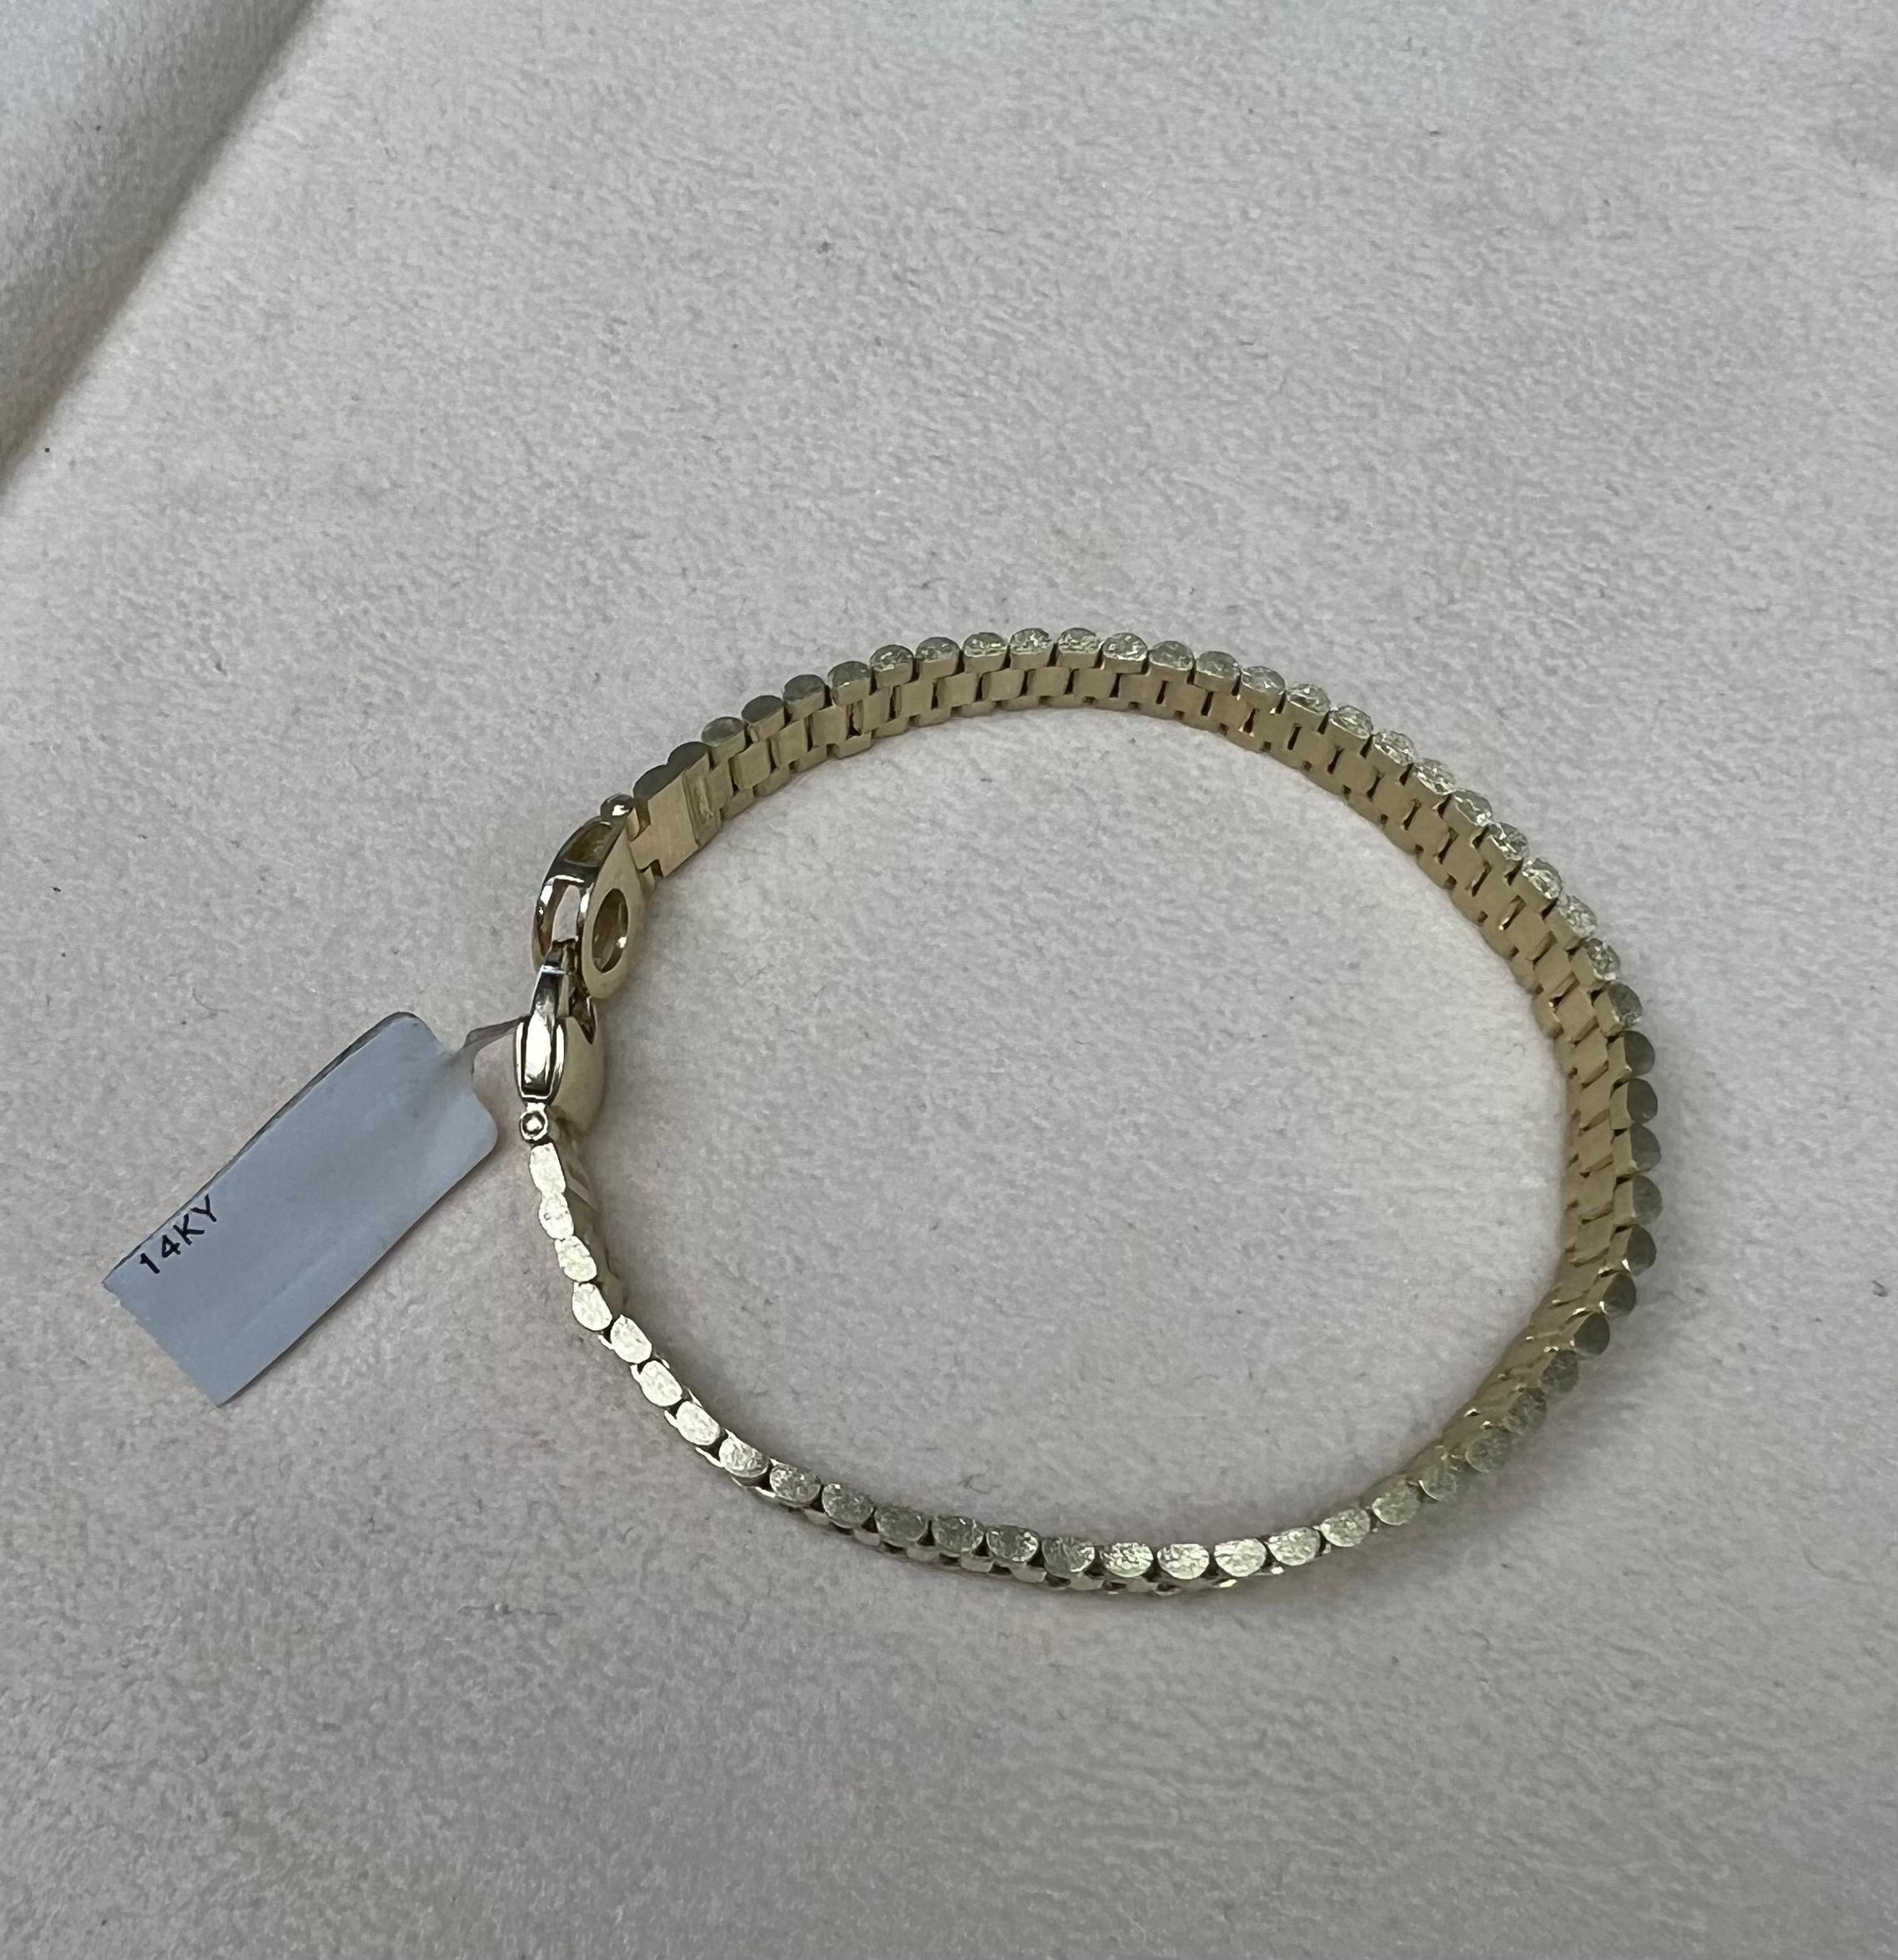 how much is a 14 karat gold bracelet worth